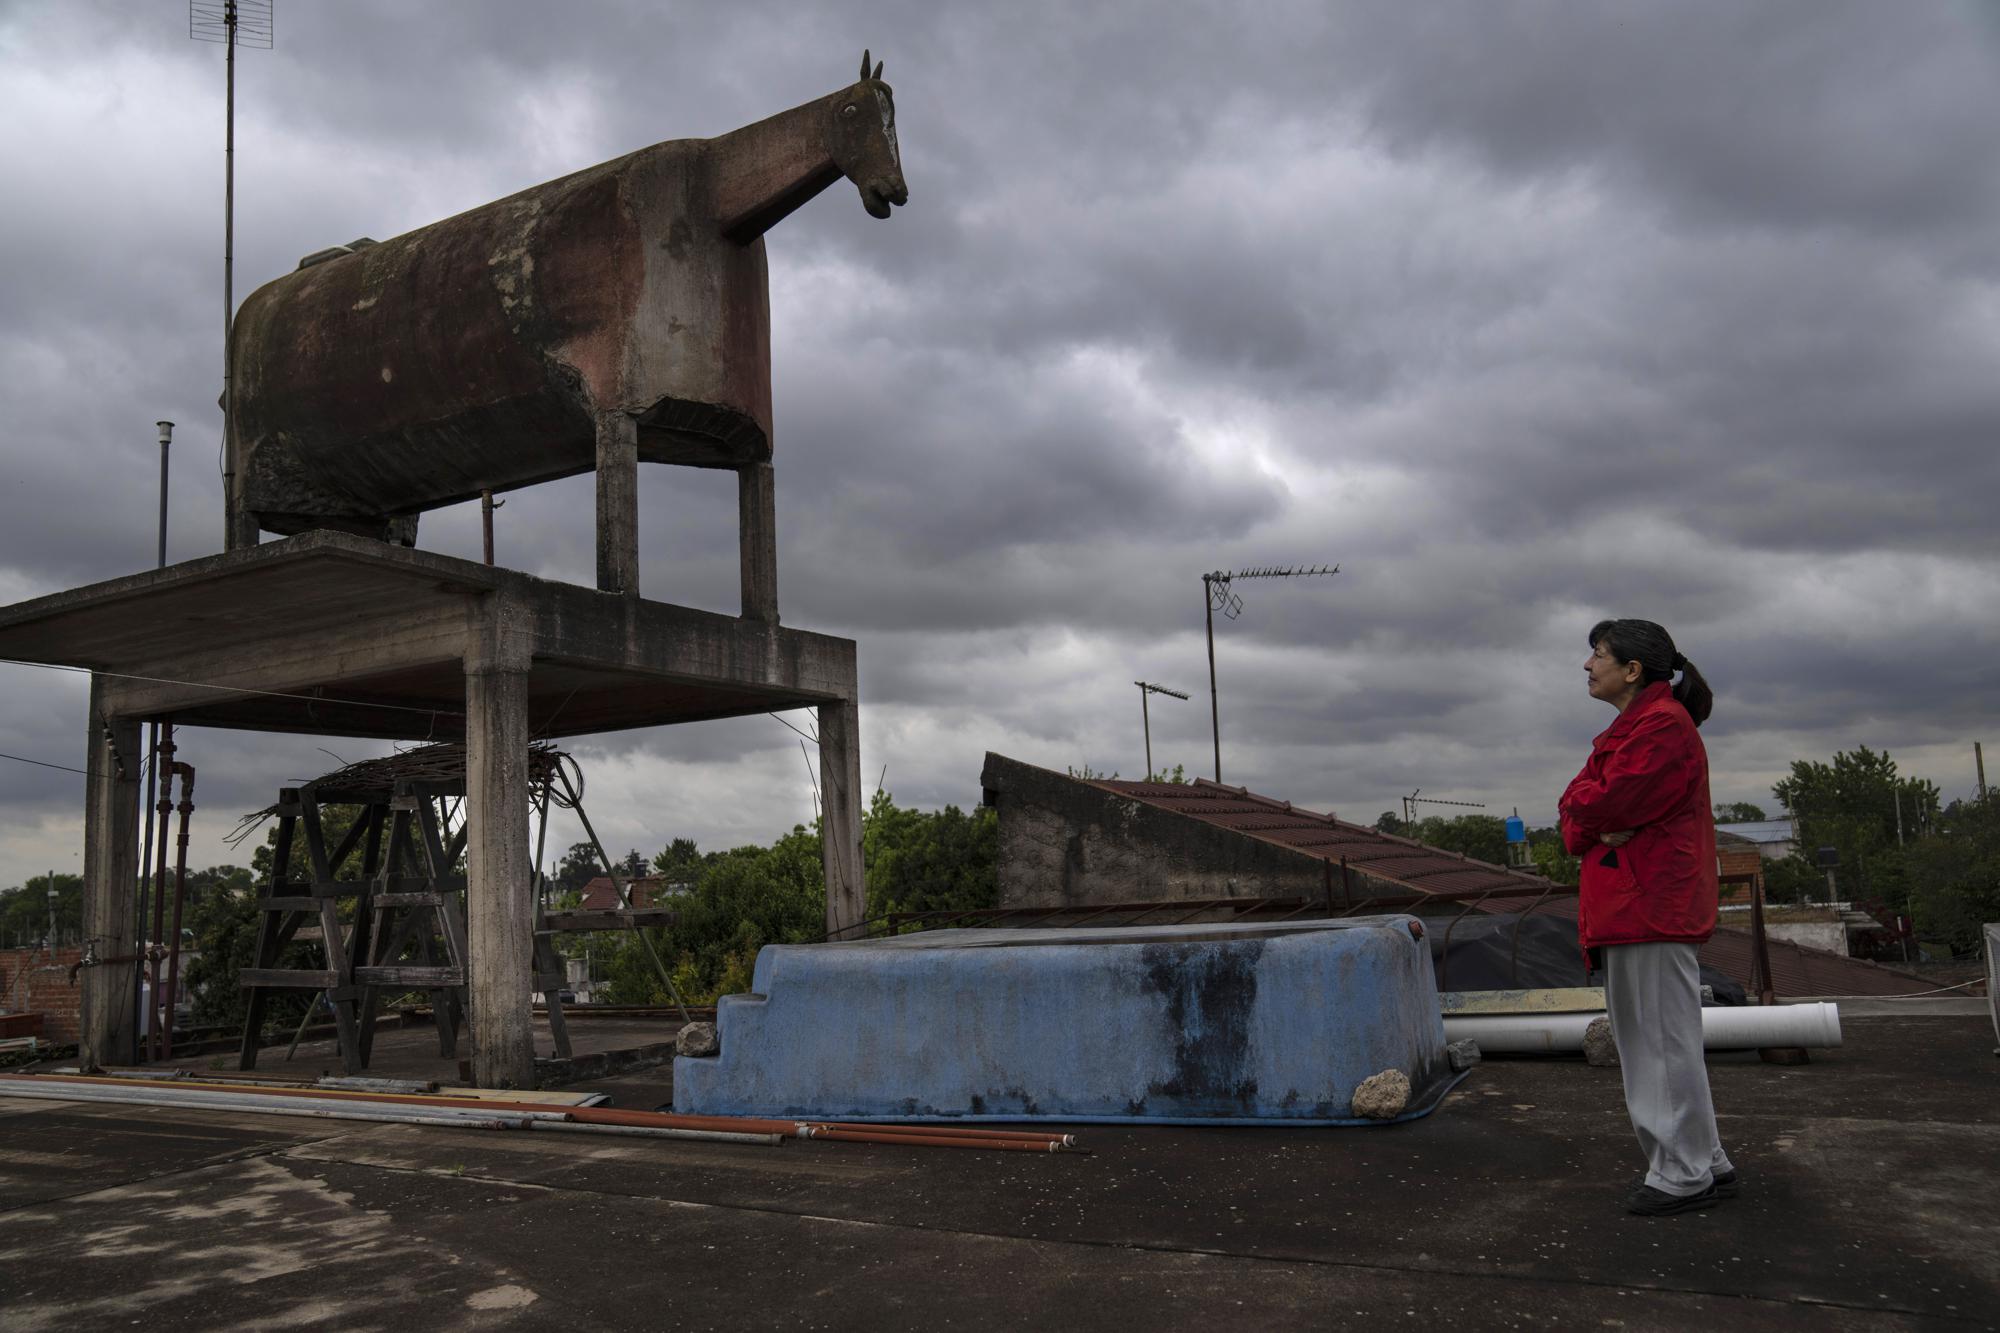 Liliana GutiÃ©rrez mira el tanque de agua con forma de caballo construido por su padre en el barrio San Jorge de Florencio Varela, Argentina, el lunes 26 de octubre de 2022. (AP Foto/Rodrigo Abd)